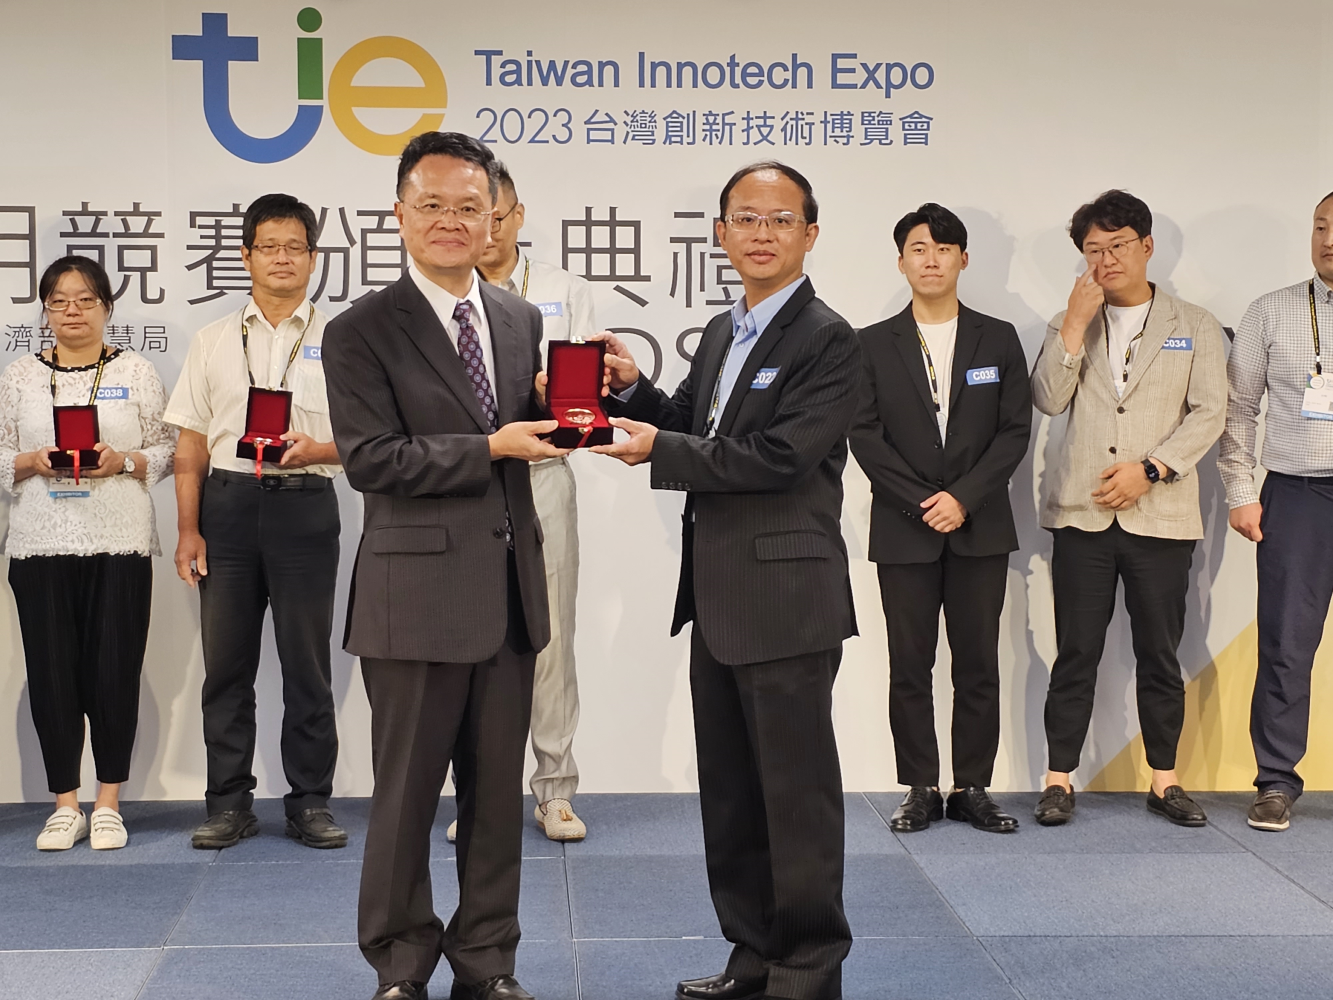 台糖「OGG1的粉末化組成物及其用途」獲2023年台灣創新技術博覽會發明競賽「銅牌獎」